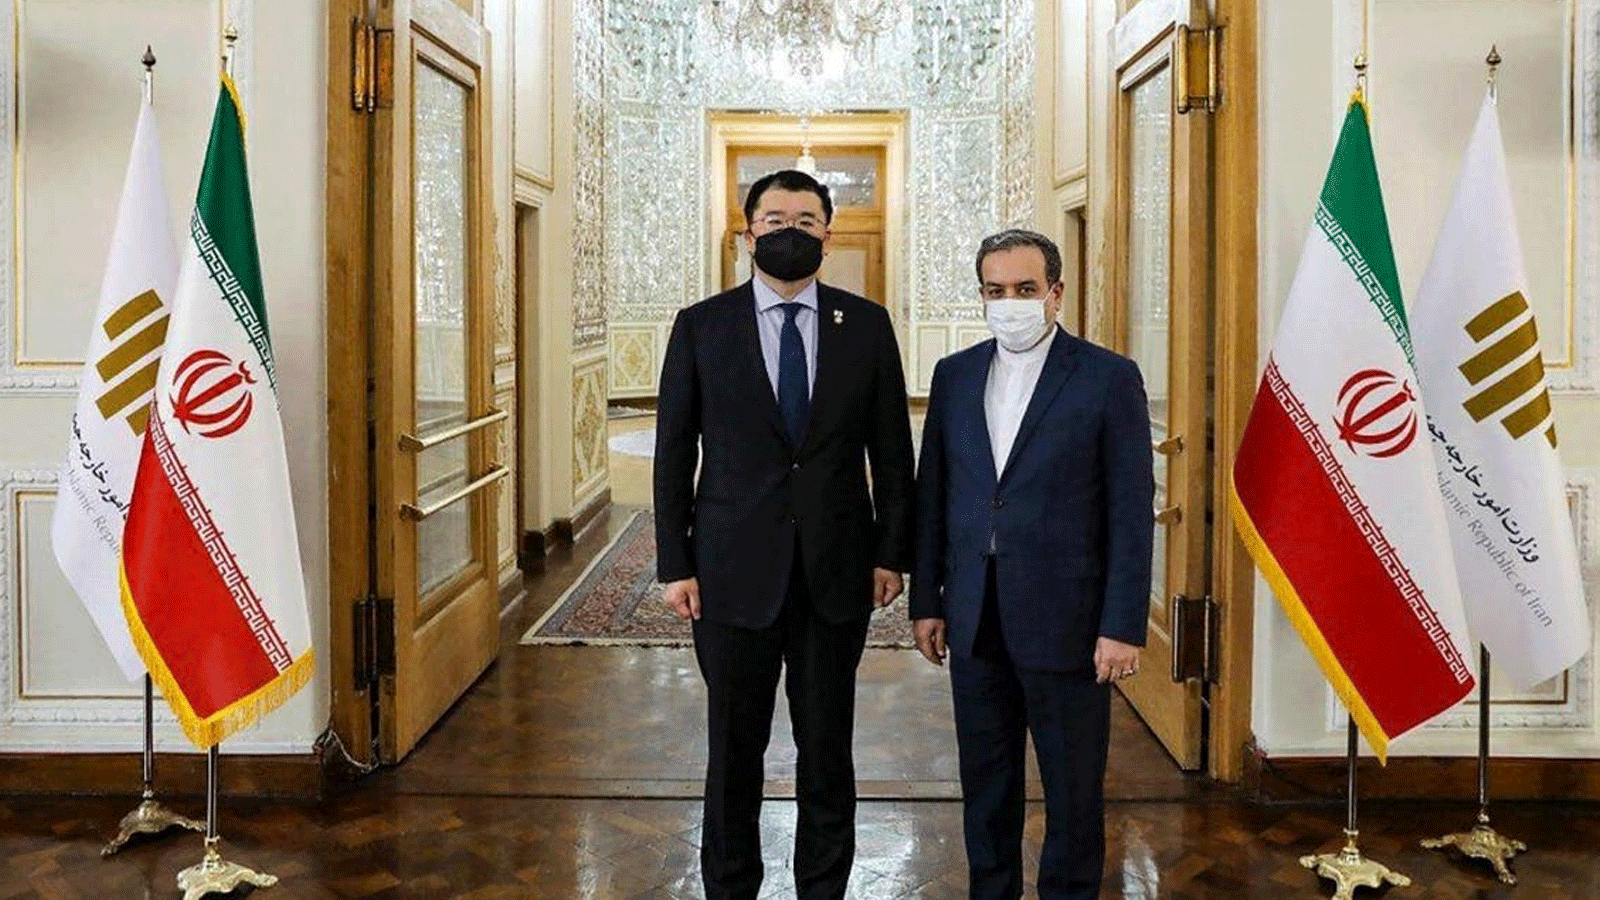 صورة مطبوعة قدمتها وزارة الخارجية الإيرانية في 10 كانون الثاني /يناير 2021، تُظهر لقاء نائب وزير خارجية كوريا الجنوبية تشوي جونغ كون (إلى اليسار) مع نظيره الإيراني عباس عراقجي، في العاصمة الإيرانية طهران.